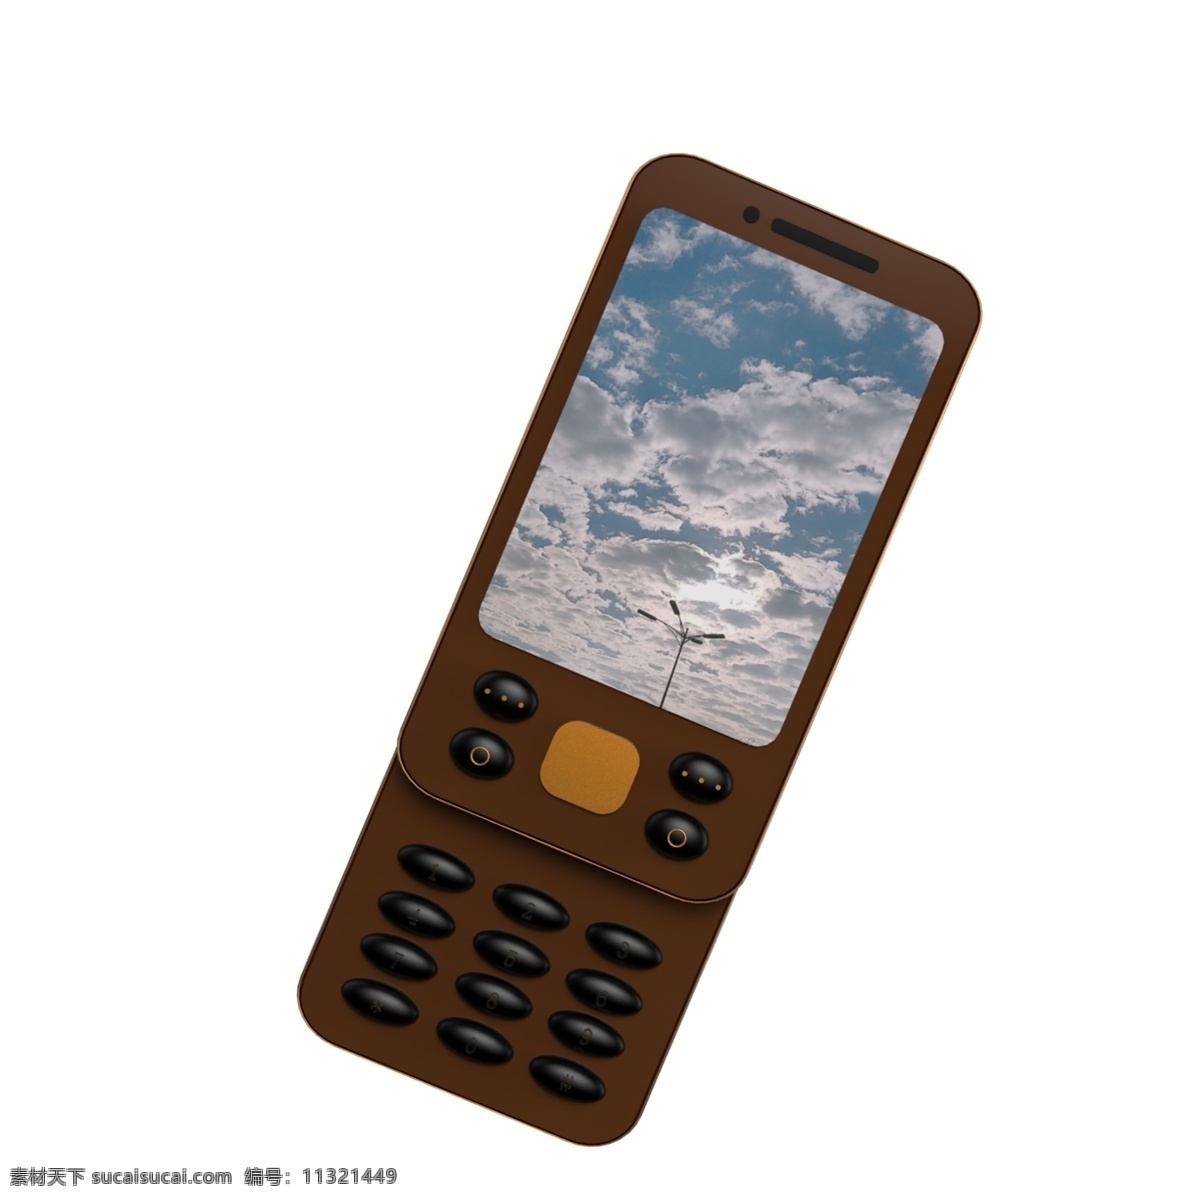 棕色 滑 盖 手机 图案 小手机 滑盖手机 智能手机 按键手机 老年机 手机模型 通讯设备 电话 电子产品